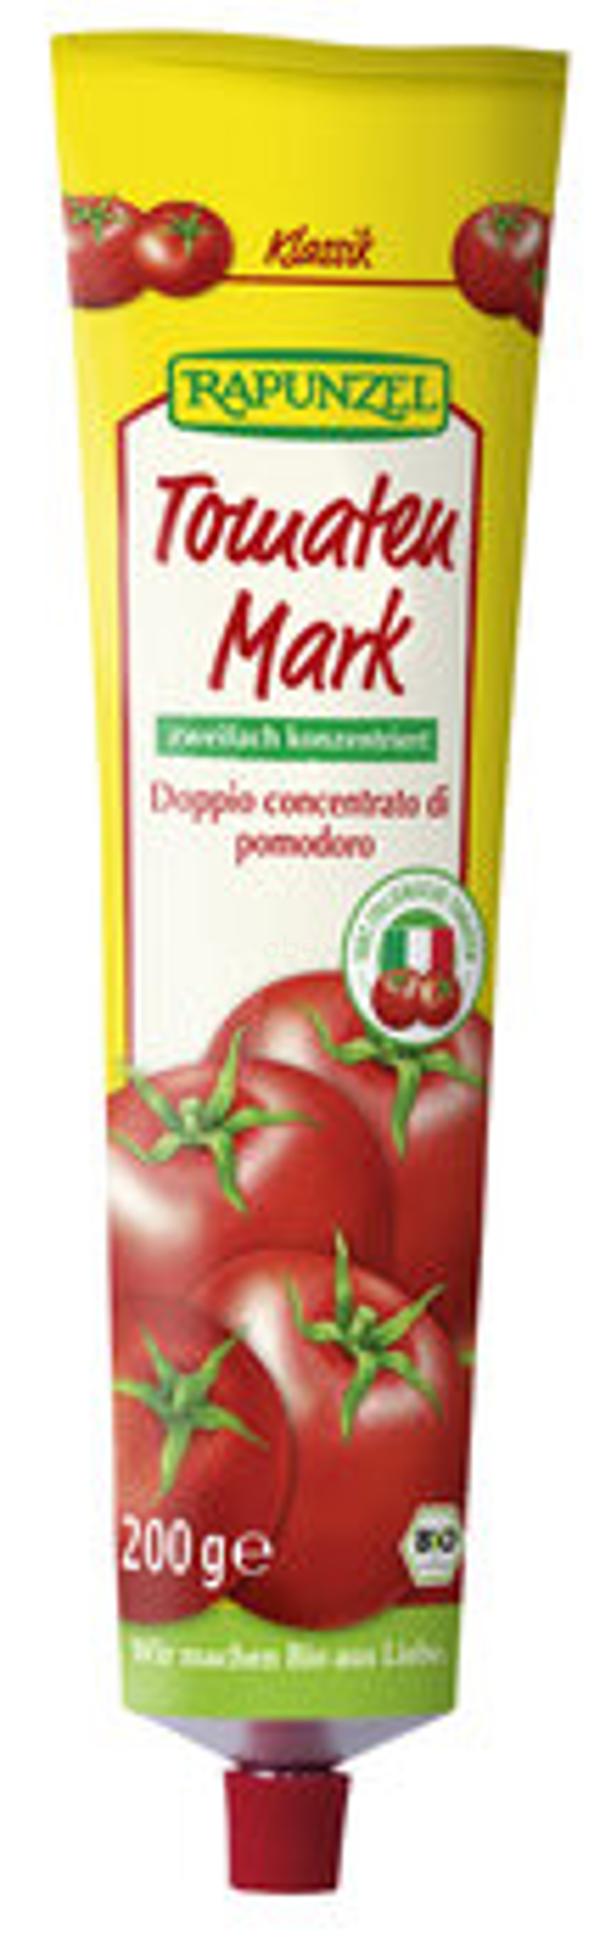 Produktfoto zu Tomatenmark, Tube 200gr